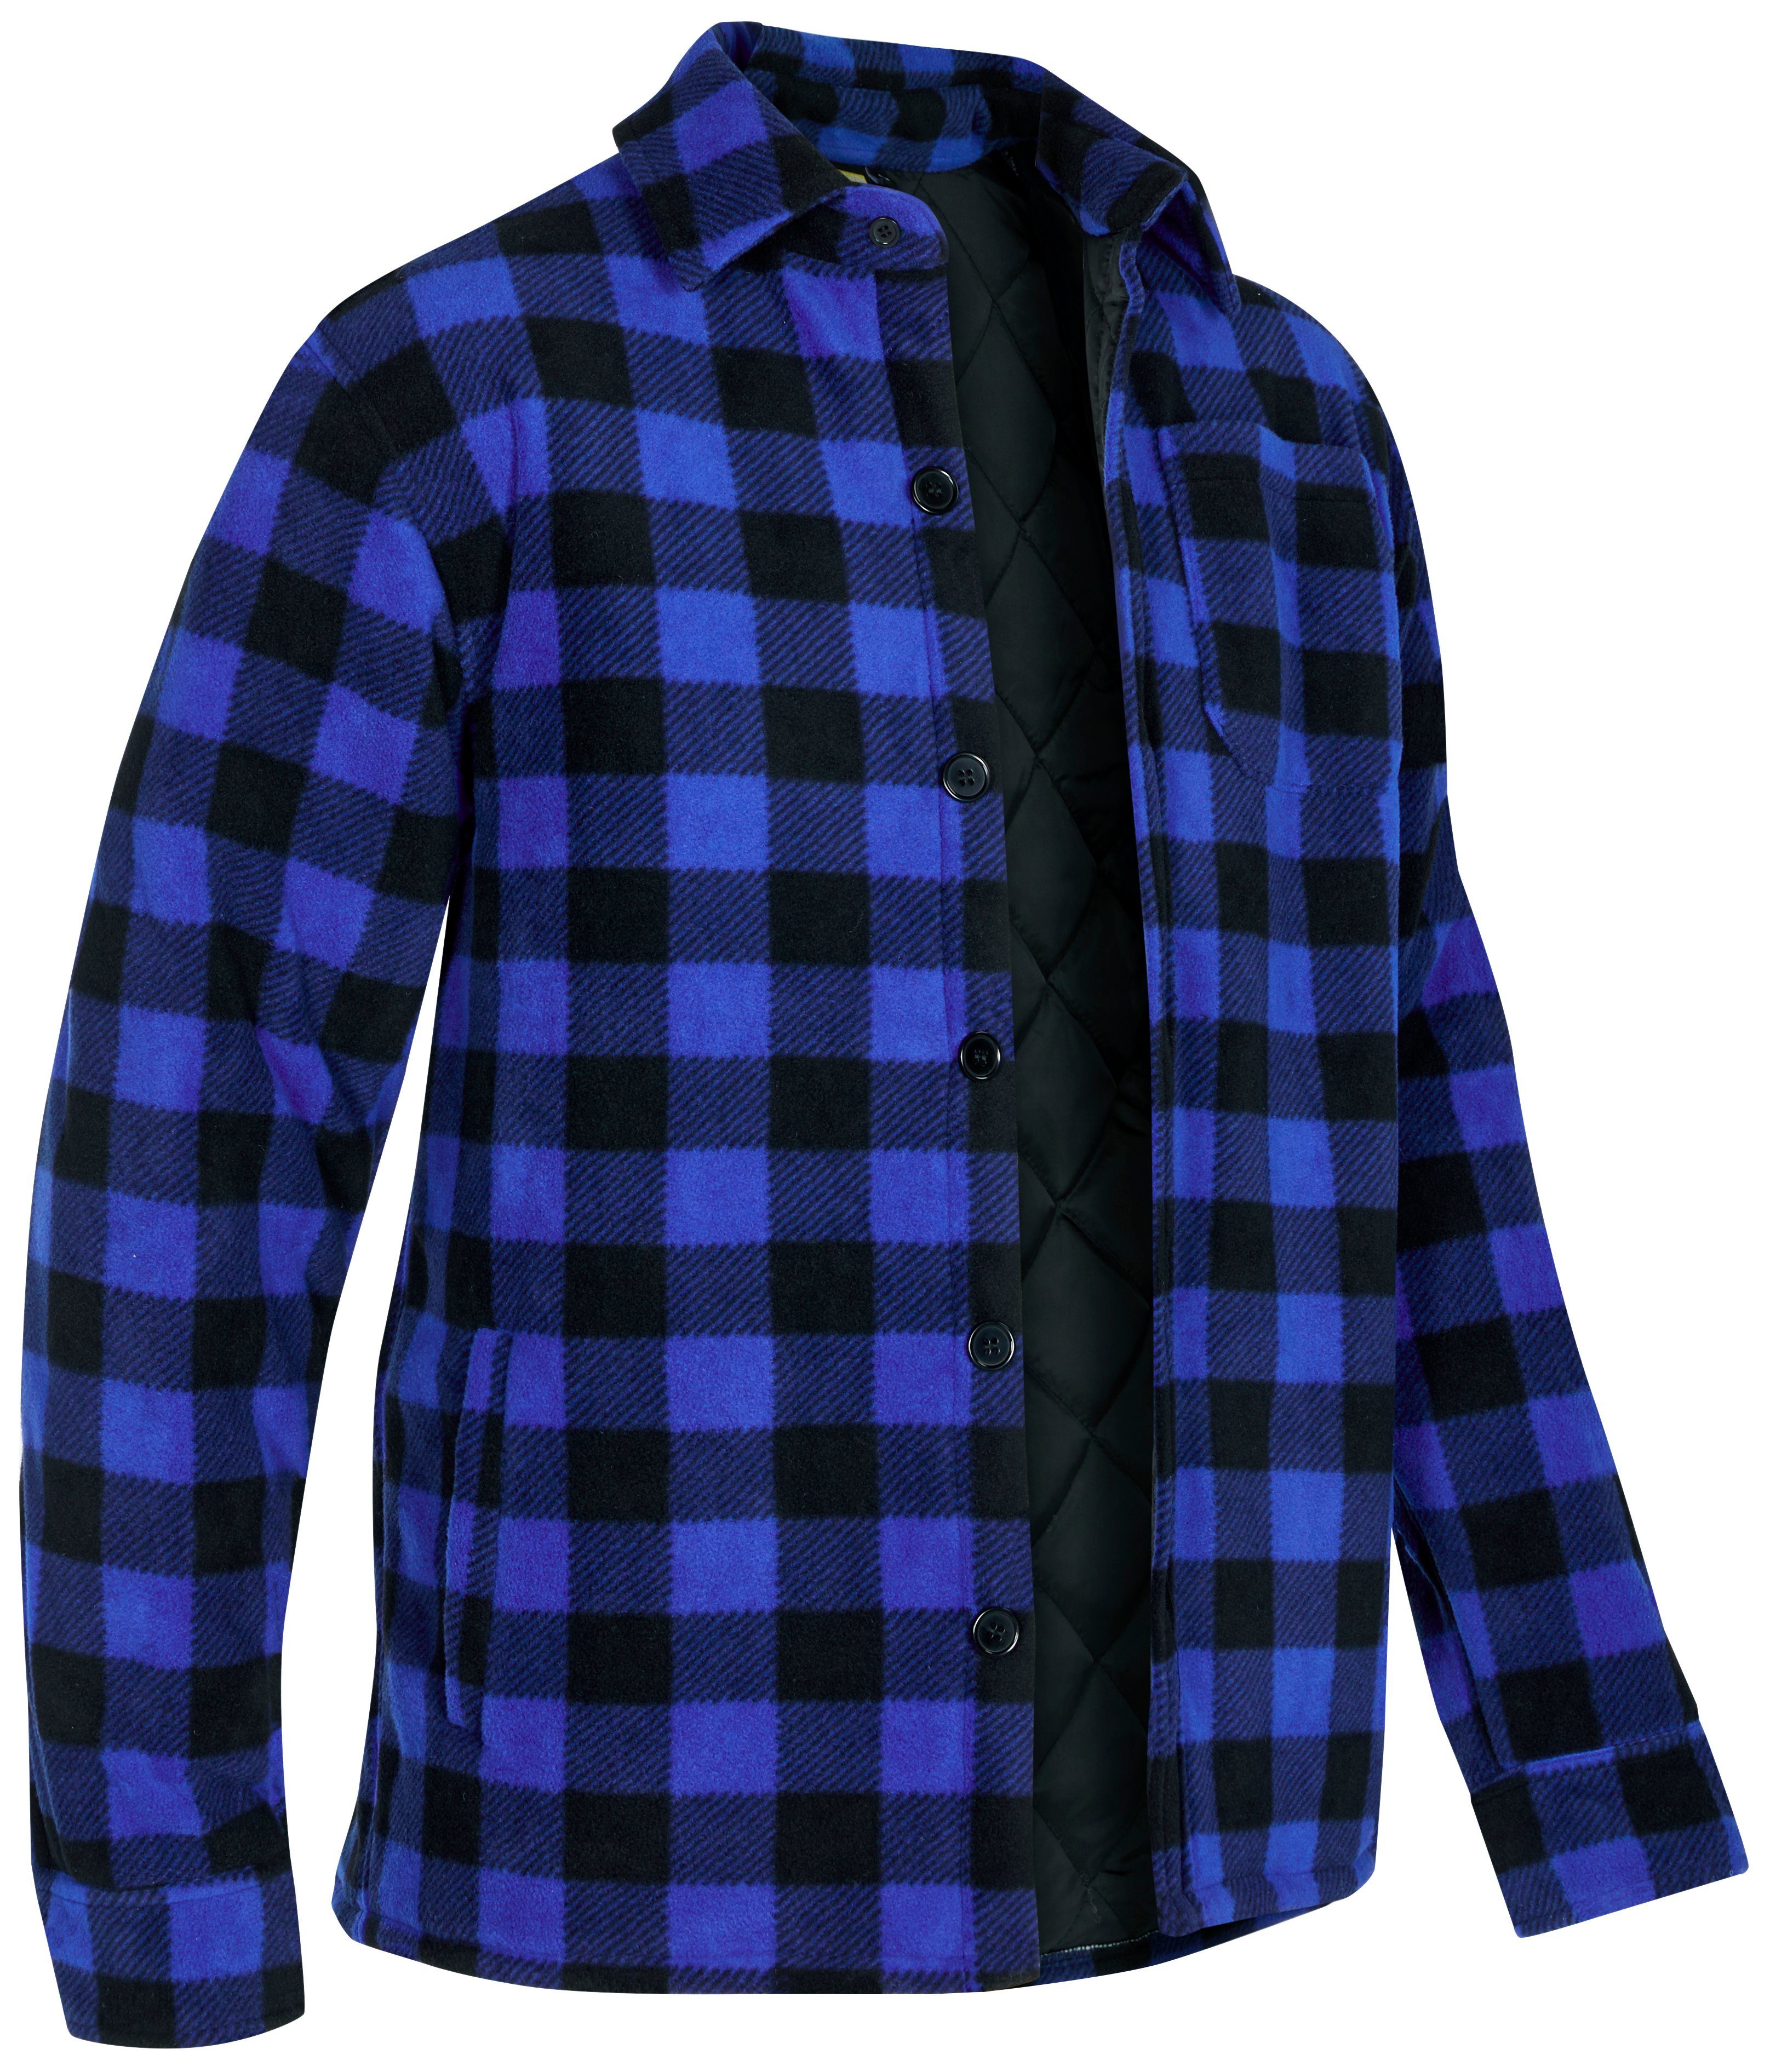 Northern Country Flanellhemd (als Jacke offen oder Hemd zugeknöpft zu tragen) warm gefüttert, mit 5 Taschen, mit verlängertem Rücken, Flanellstoff blau-schwarz